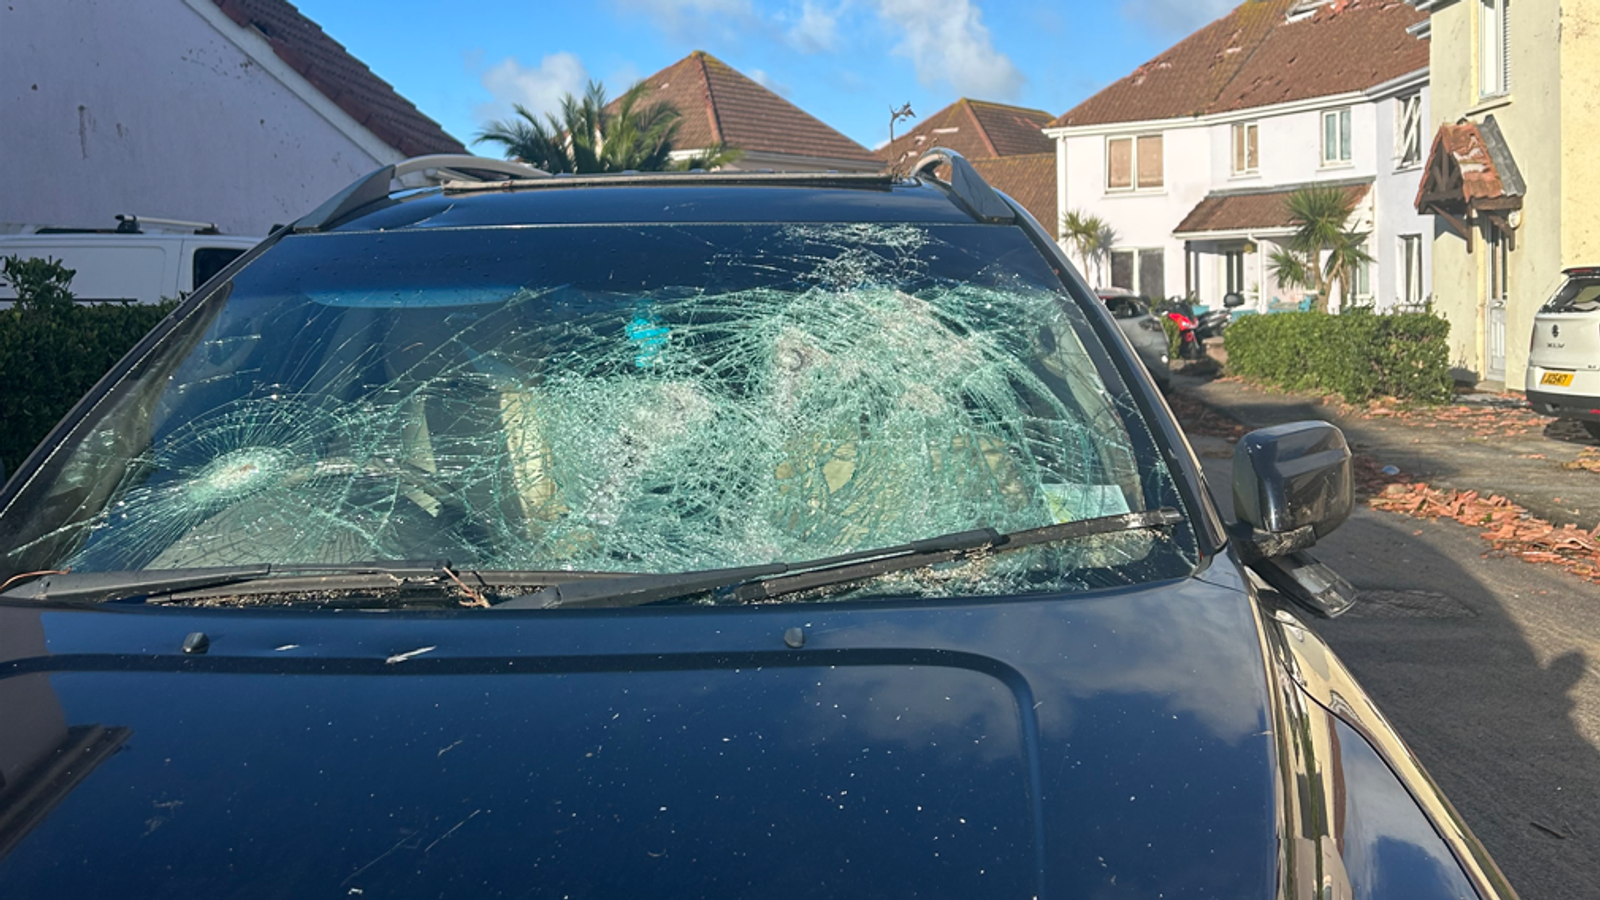 «Ужасающий» Шторм Кьяран оставляет разбитые машины и разрушает дома в Джерси |  Новости Великобритании